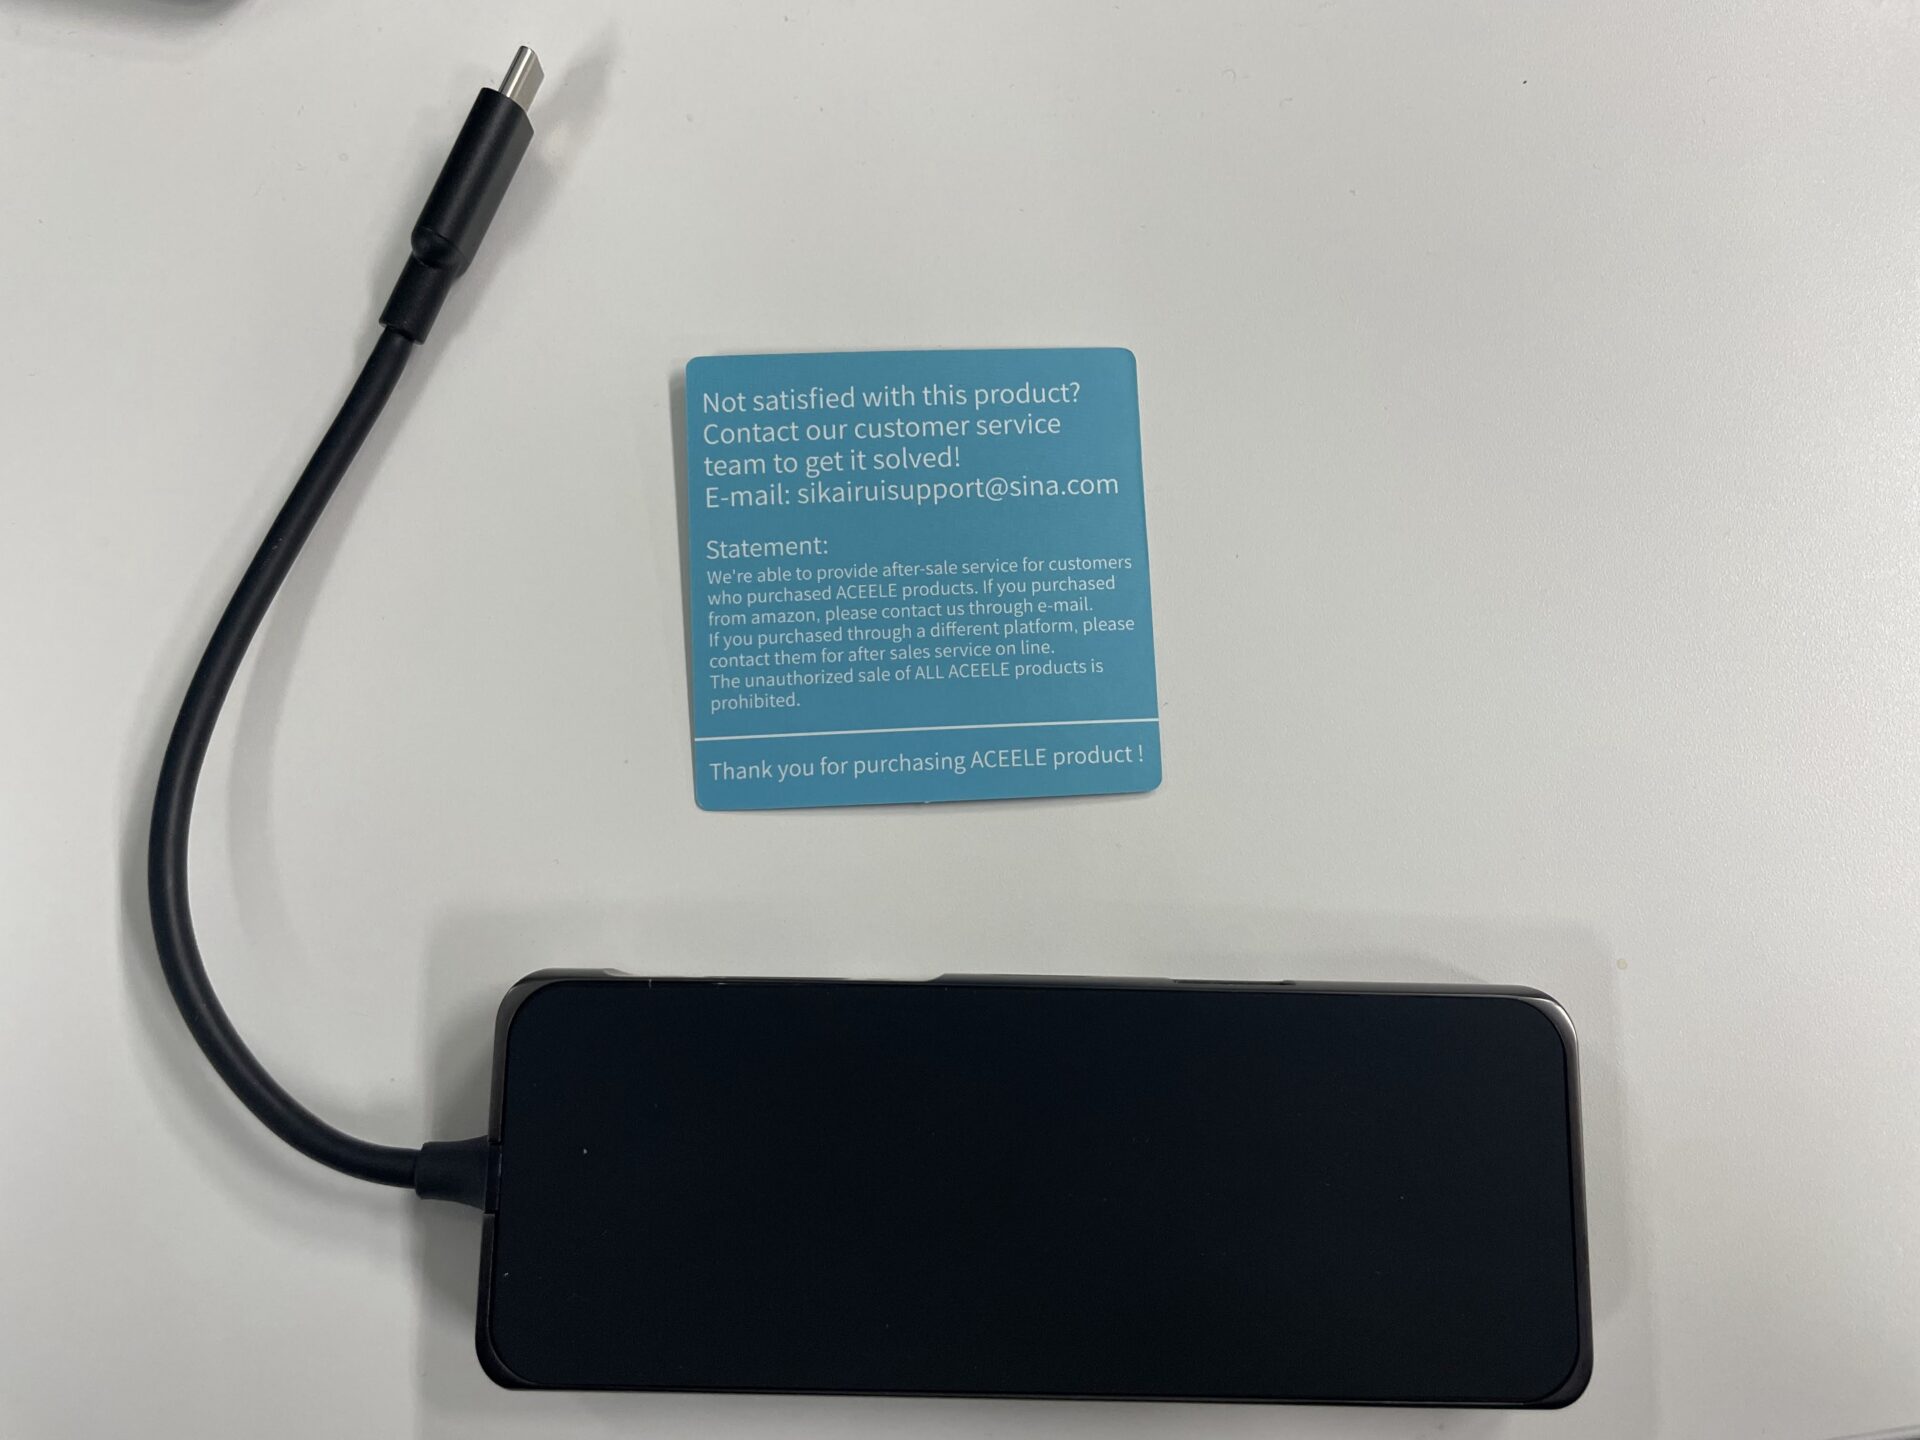 Aceele USB C ハブ ドッキングステーション 11 IN 1 多機能 HDMI 4K出力 VGA出力 2*USB3.0ポート/100W PD充電/LANポート(1000Mbps)/3.5mmオーディオ/TF/SDカードリーダー usb-cハブ/MacBook Pro/ MacBook Air/ iPad Pro 2018 2020/ Dell XPS 15 13 / Surface Go / Huawei Matebook およびその他のType Cデバイス対応可能なタイプ C ハブ　製品　裏